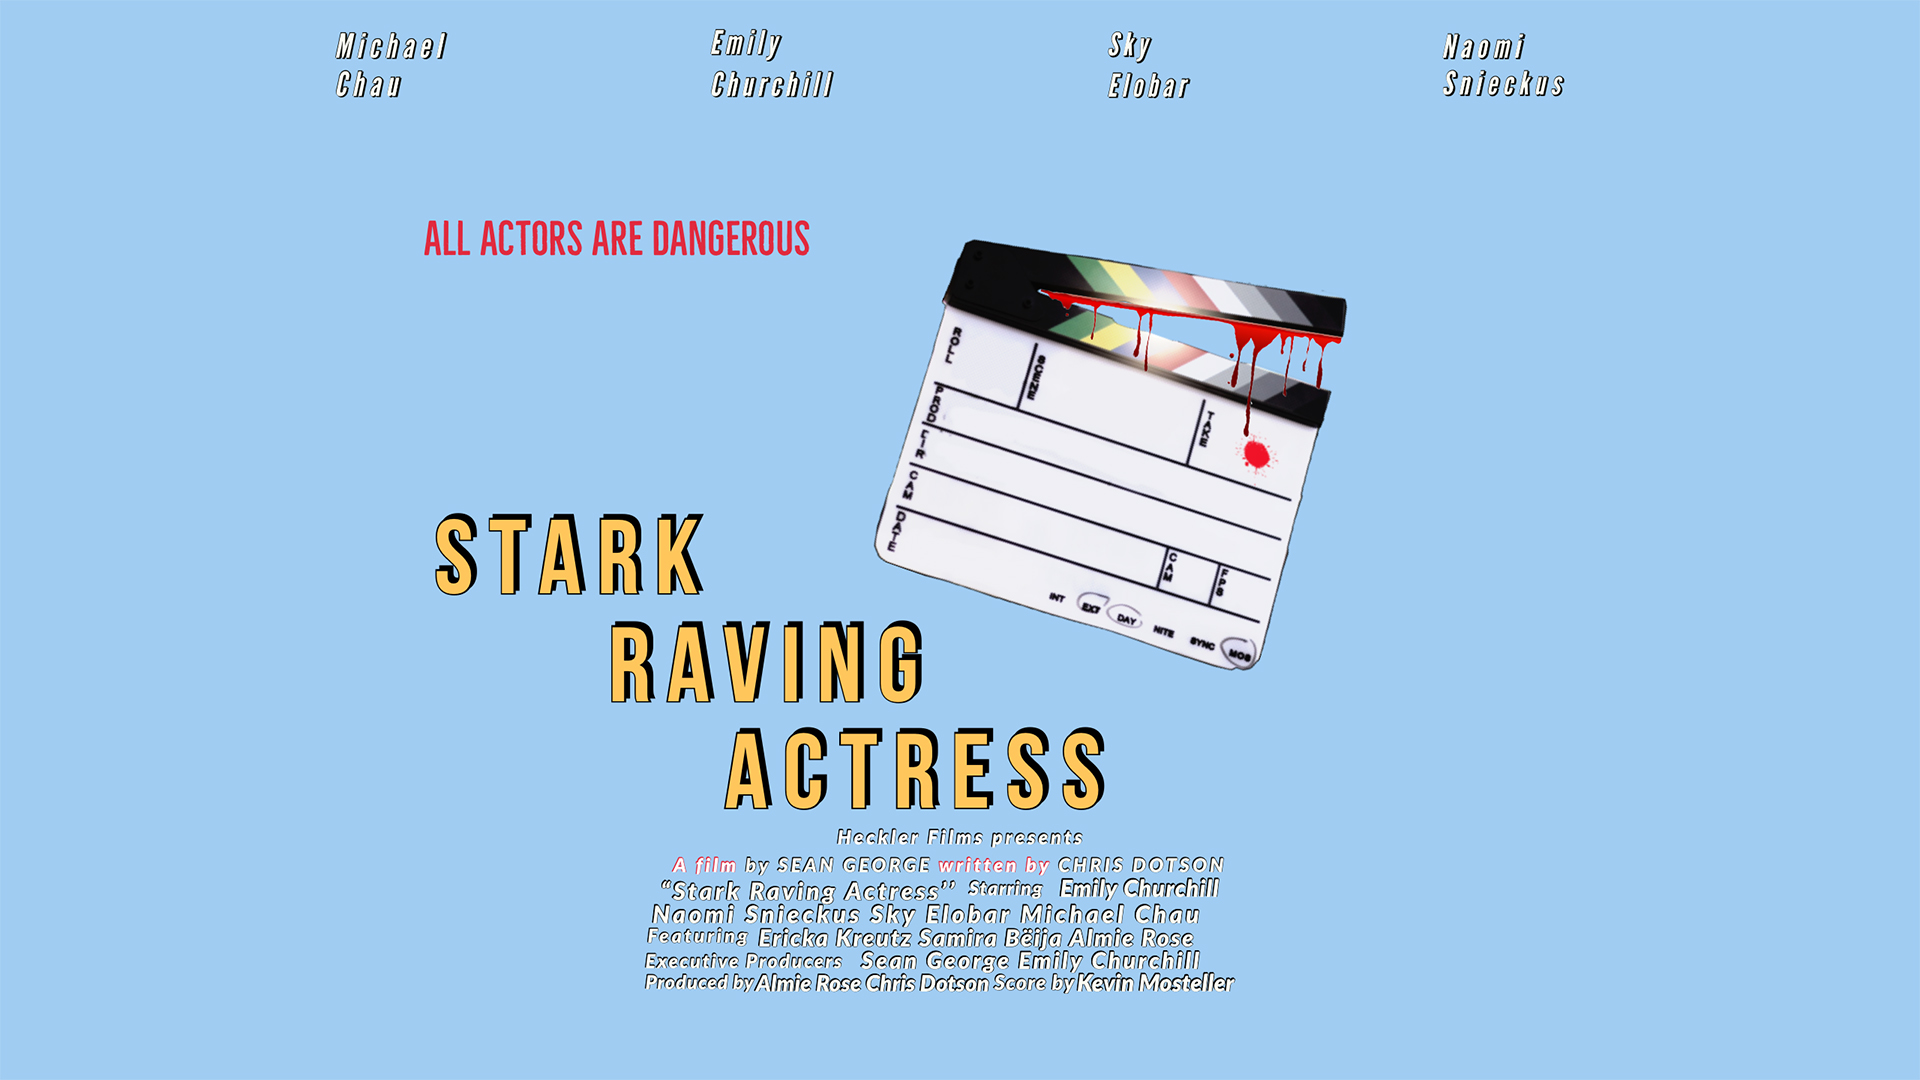 Stark Raving Actress